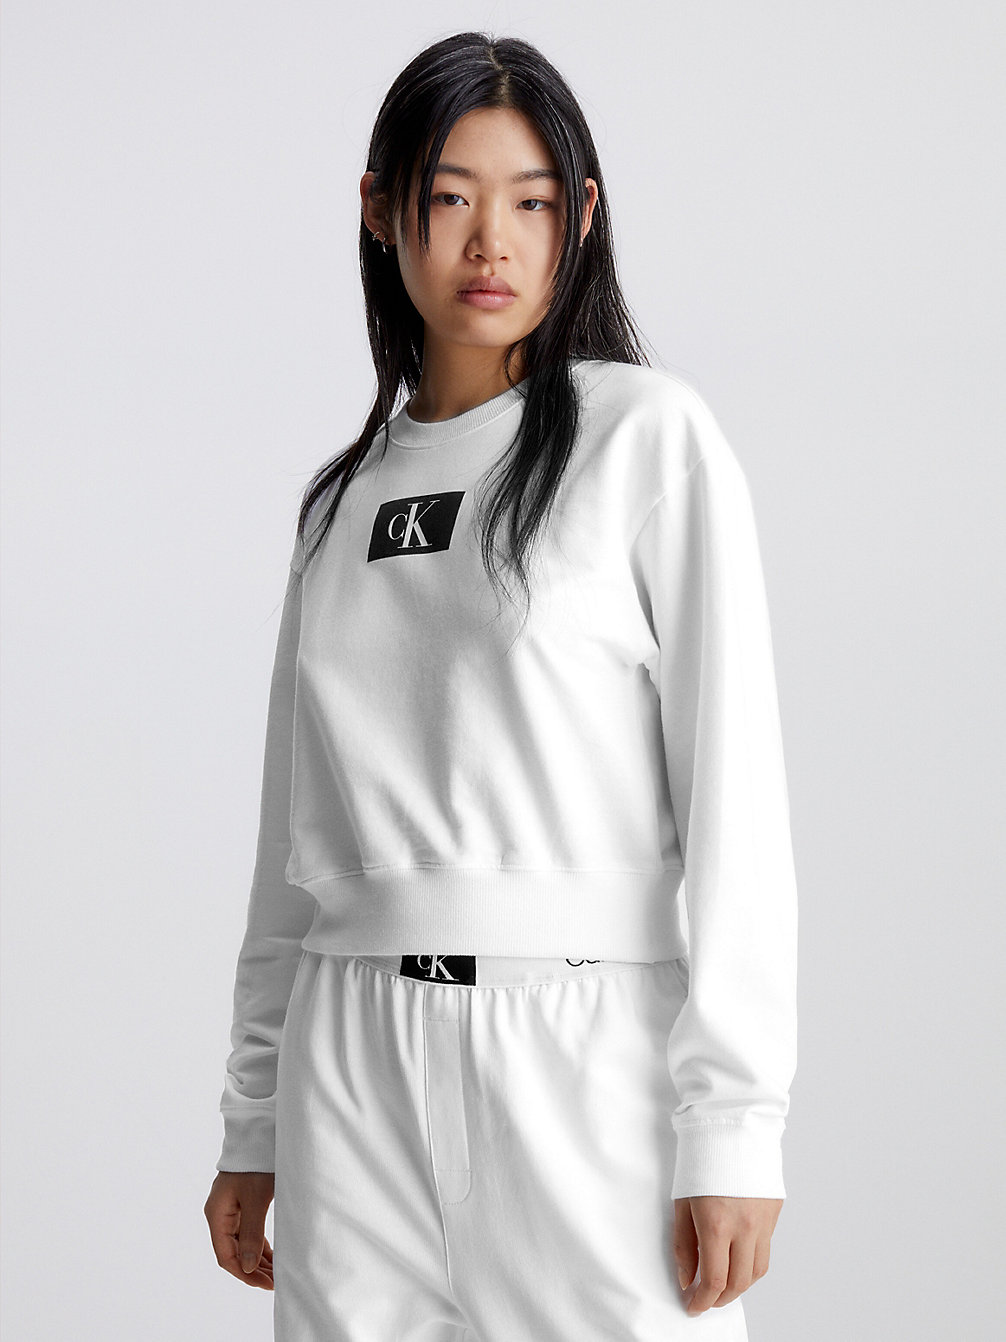 WHITE Lounge-Sweatshirt - Ck96 undefined Damen Calvin Klein